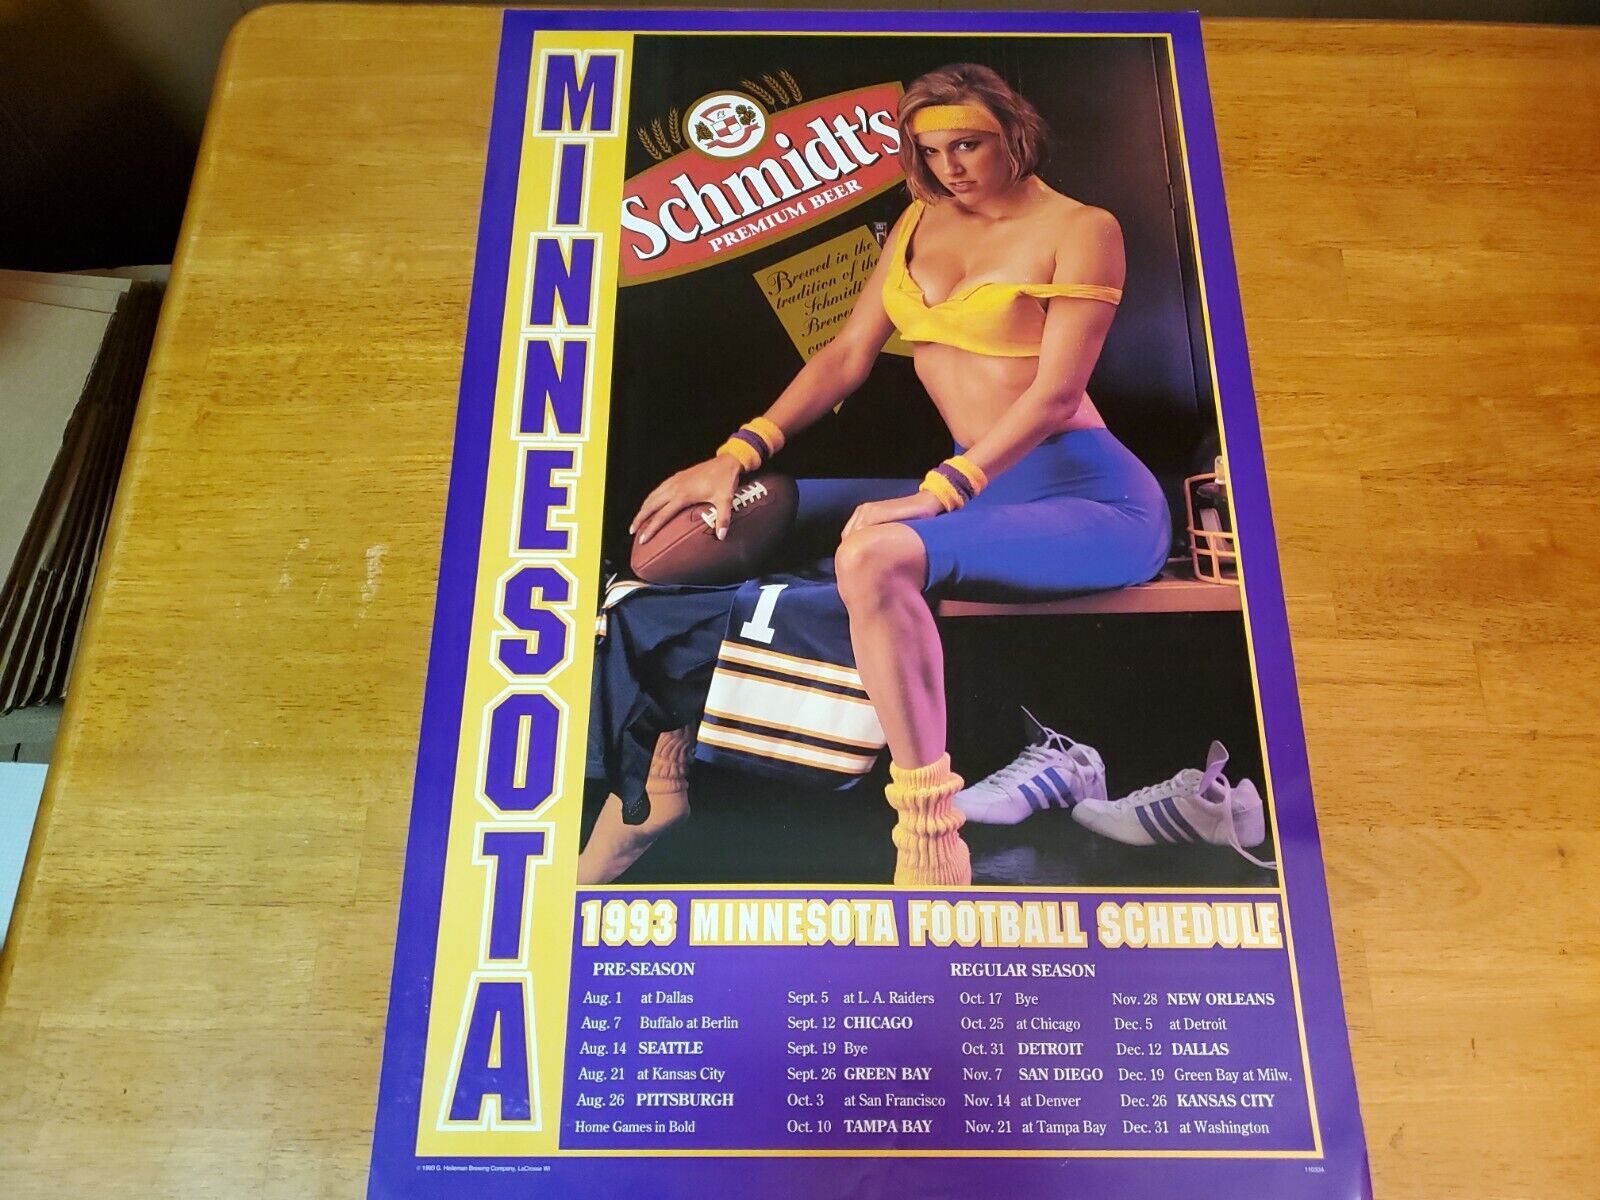 Schmidt Beer POSTER  Minnesota Vikings 1993 Schedule - 17x27 - NOS - Sexy Woman